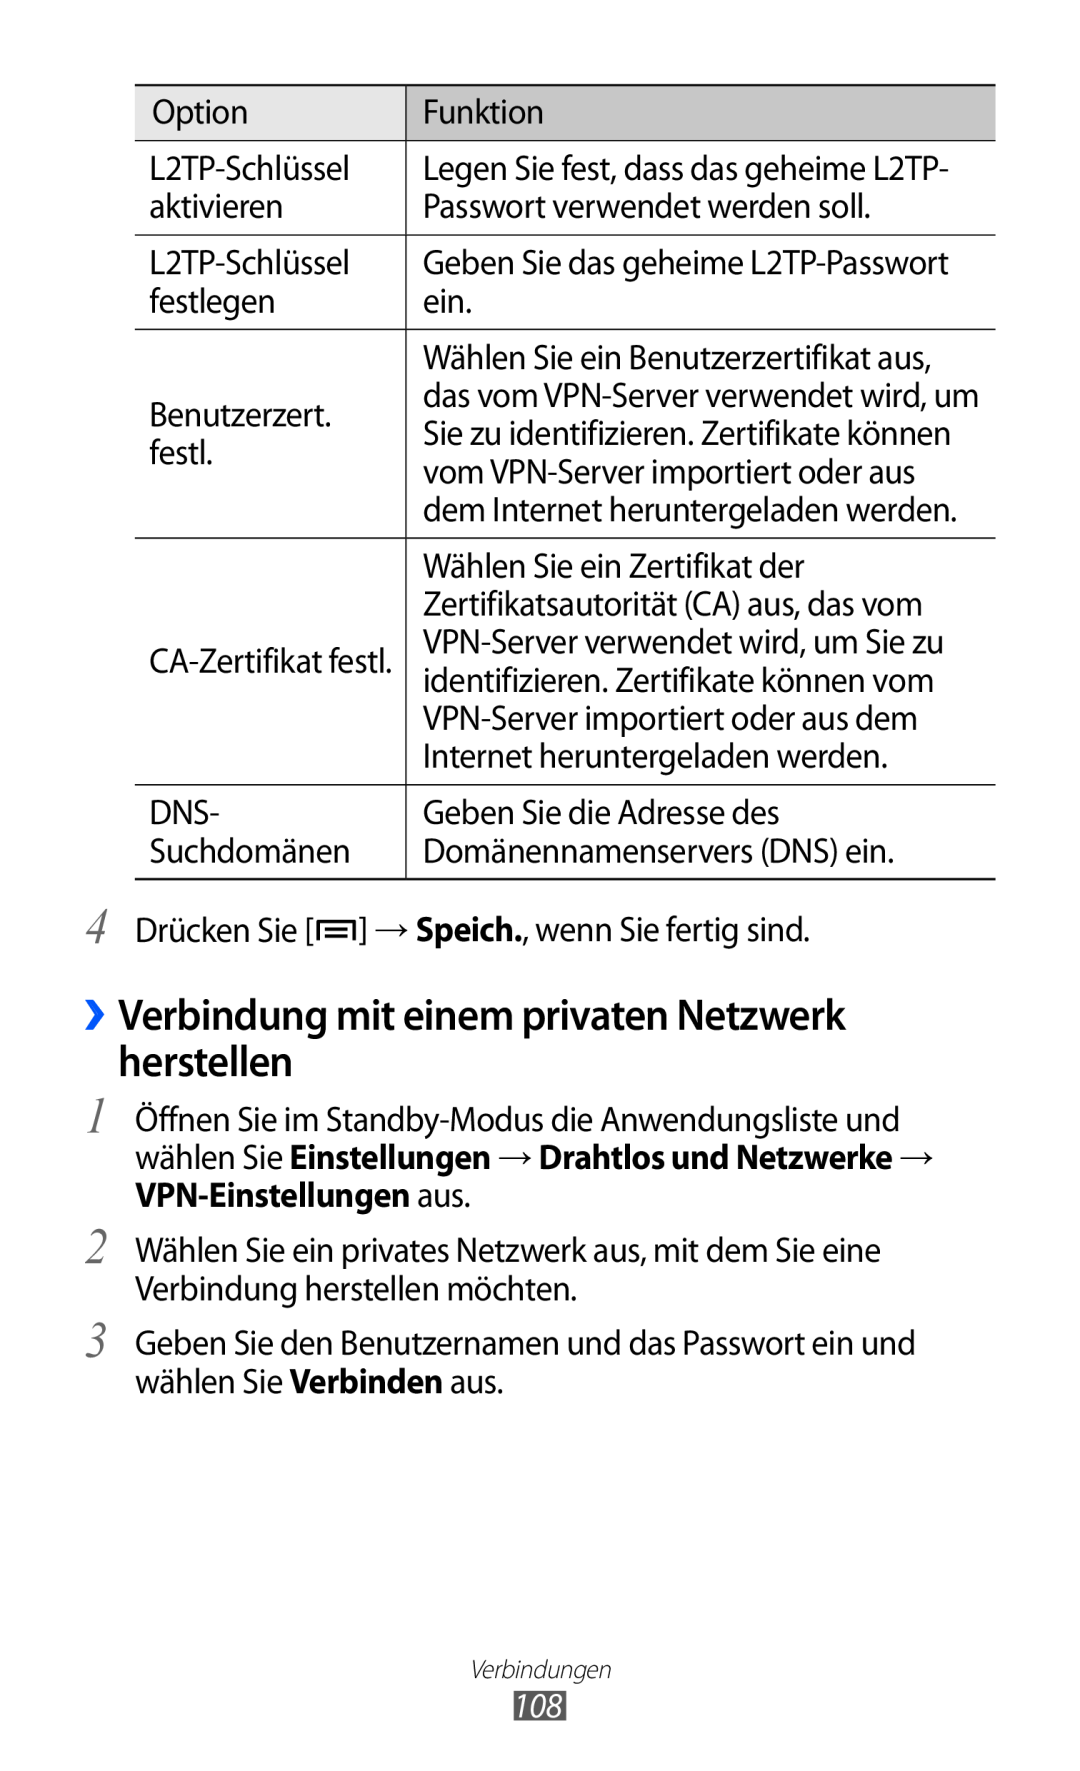 Samsung GT-S6500ZYDTUR manual ››Verbindung mit einem privaten Netzwerk herstellen, Wählen Sie ein Benutzerzertifikat aus 